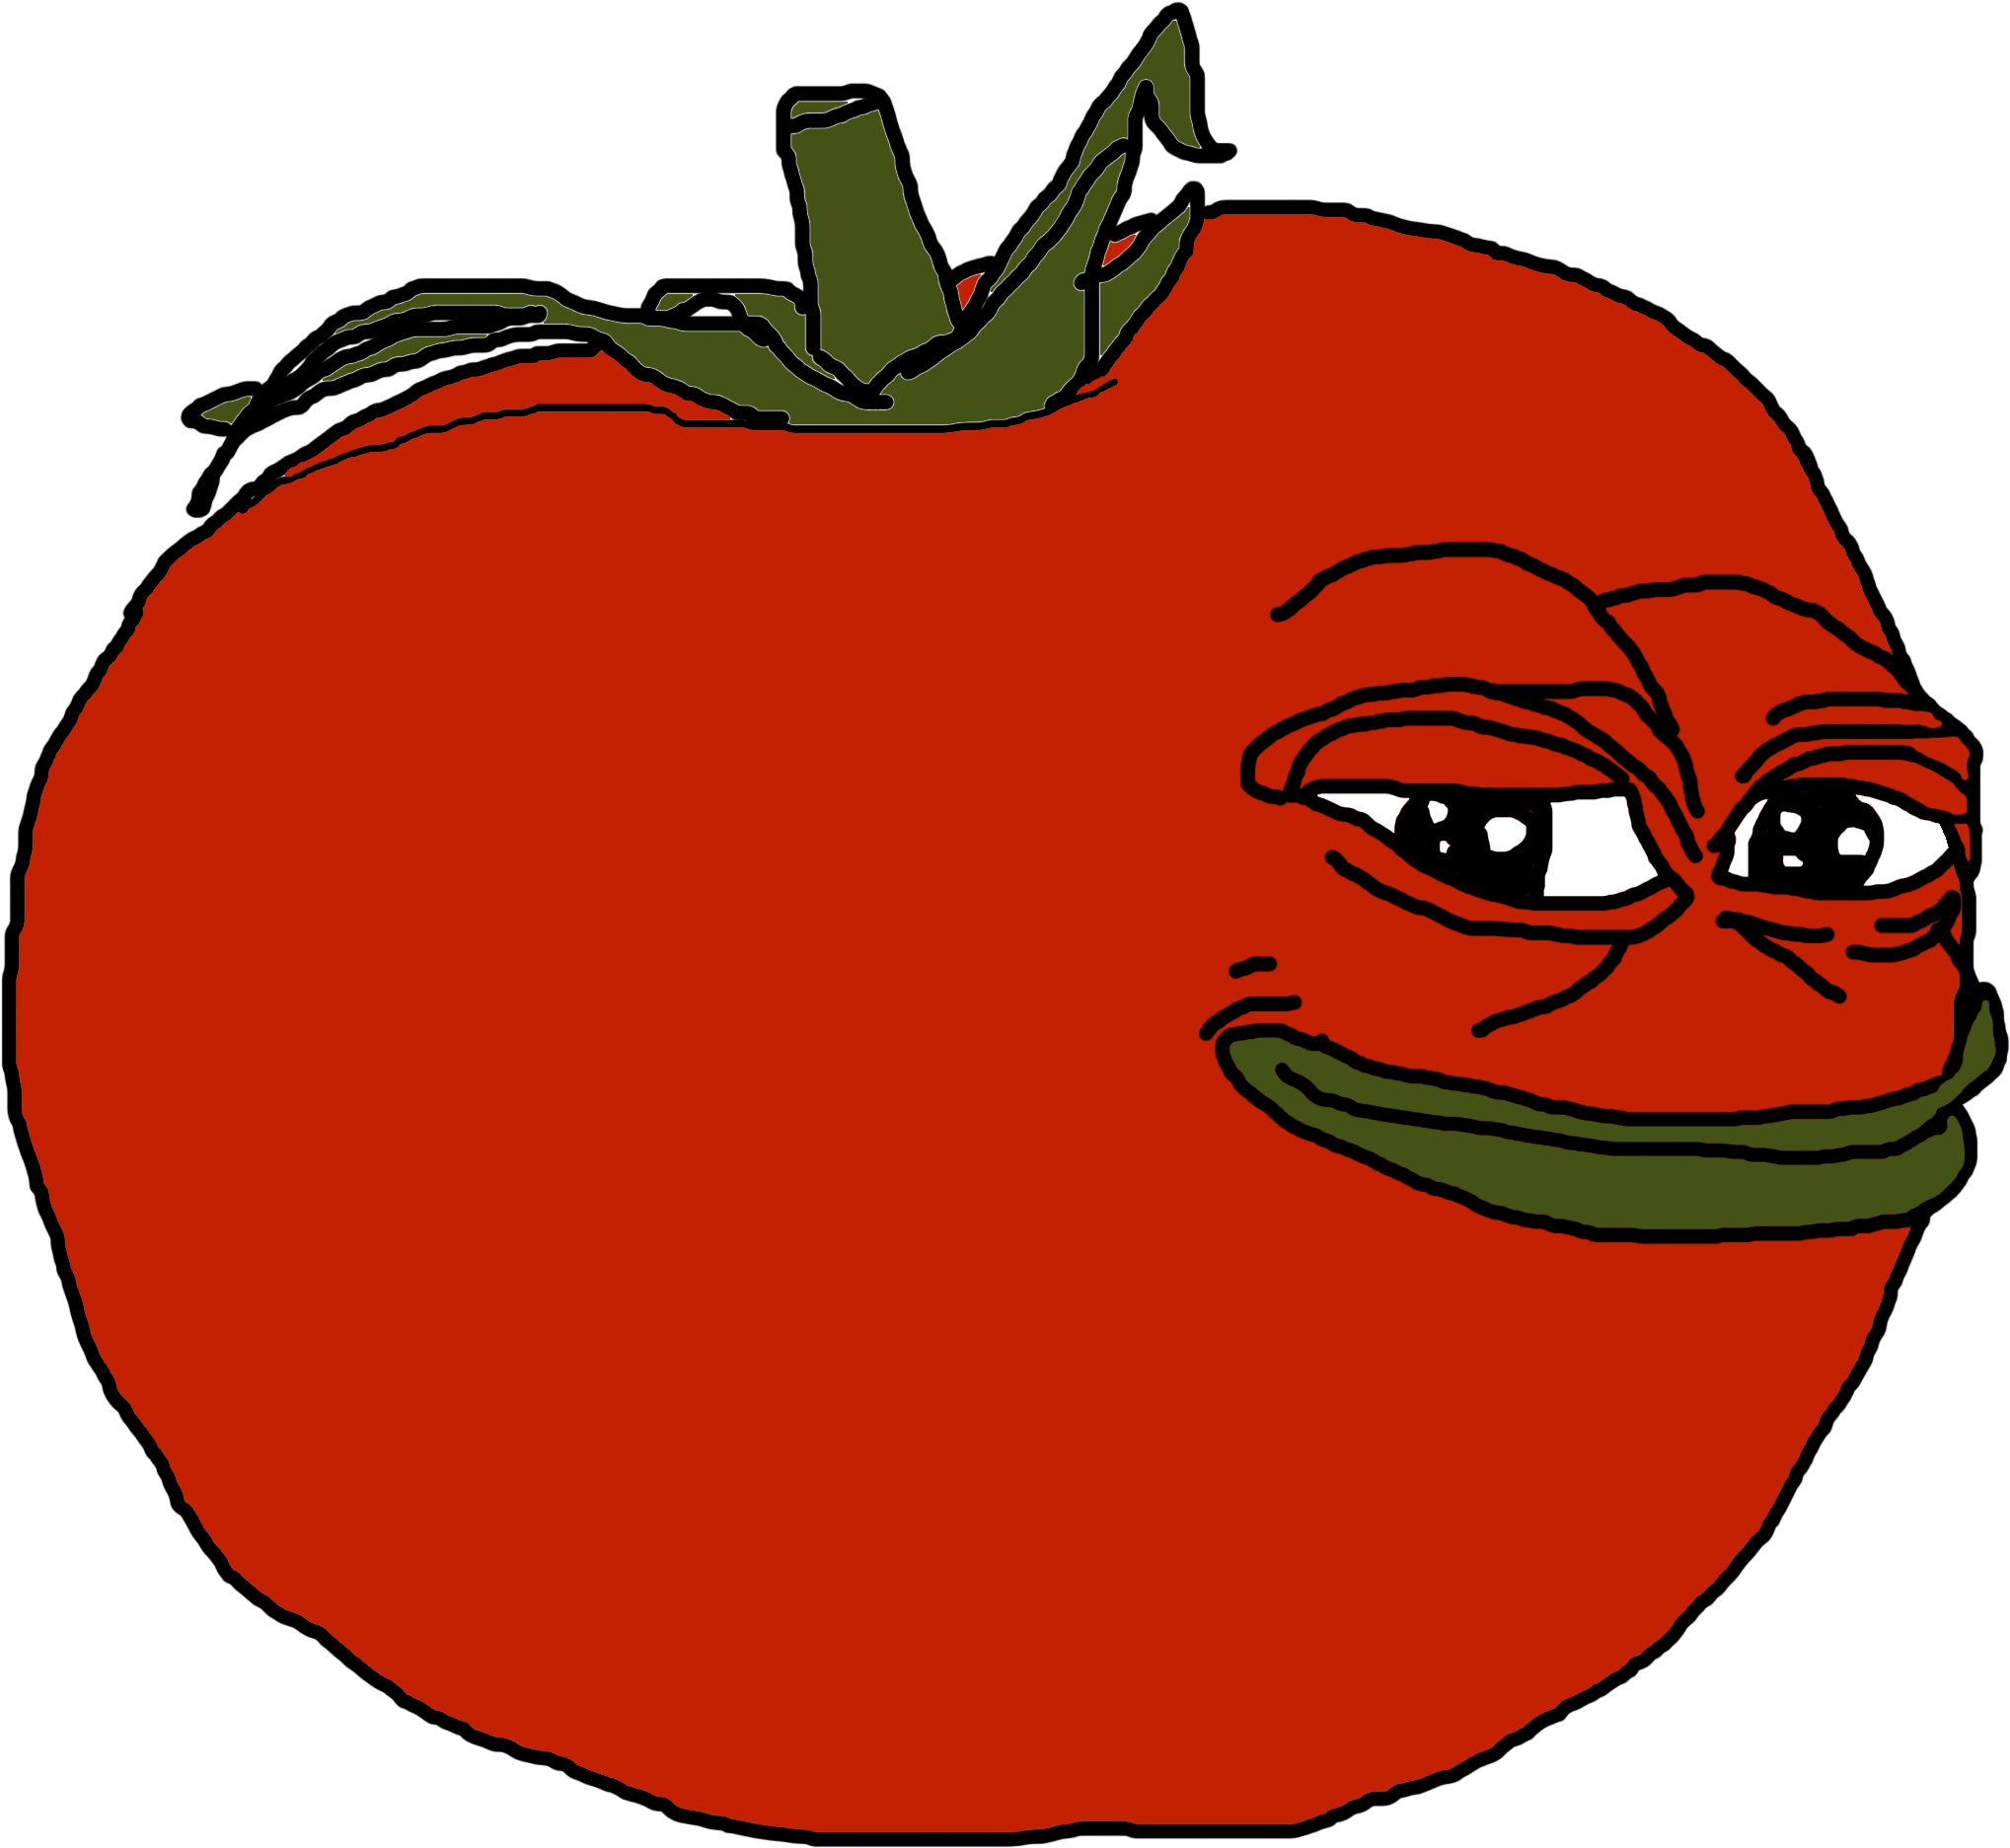 10290230 - Tomato Pepe (2400x2400)